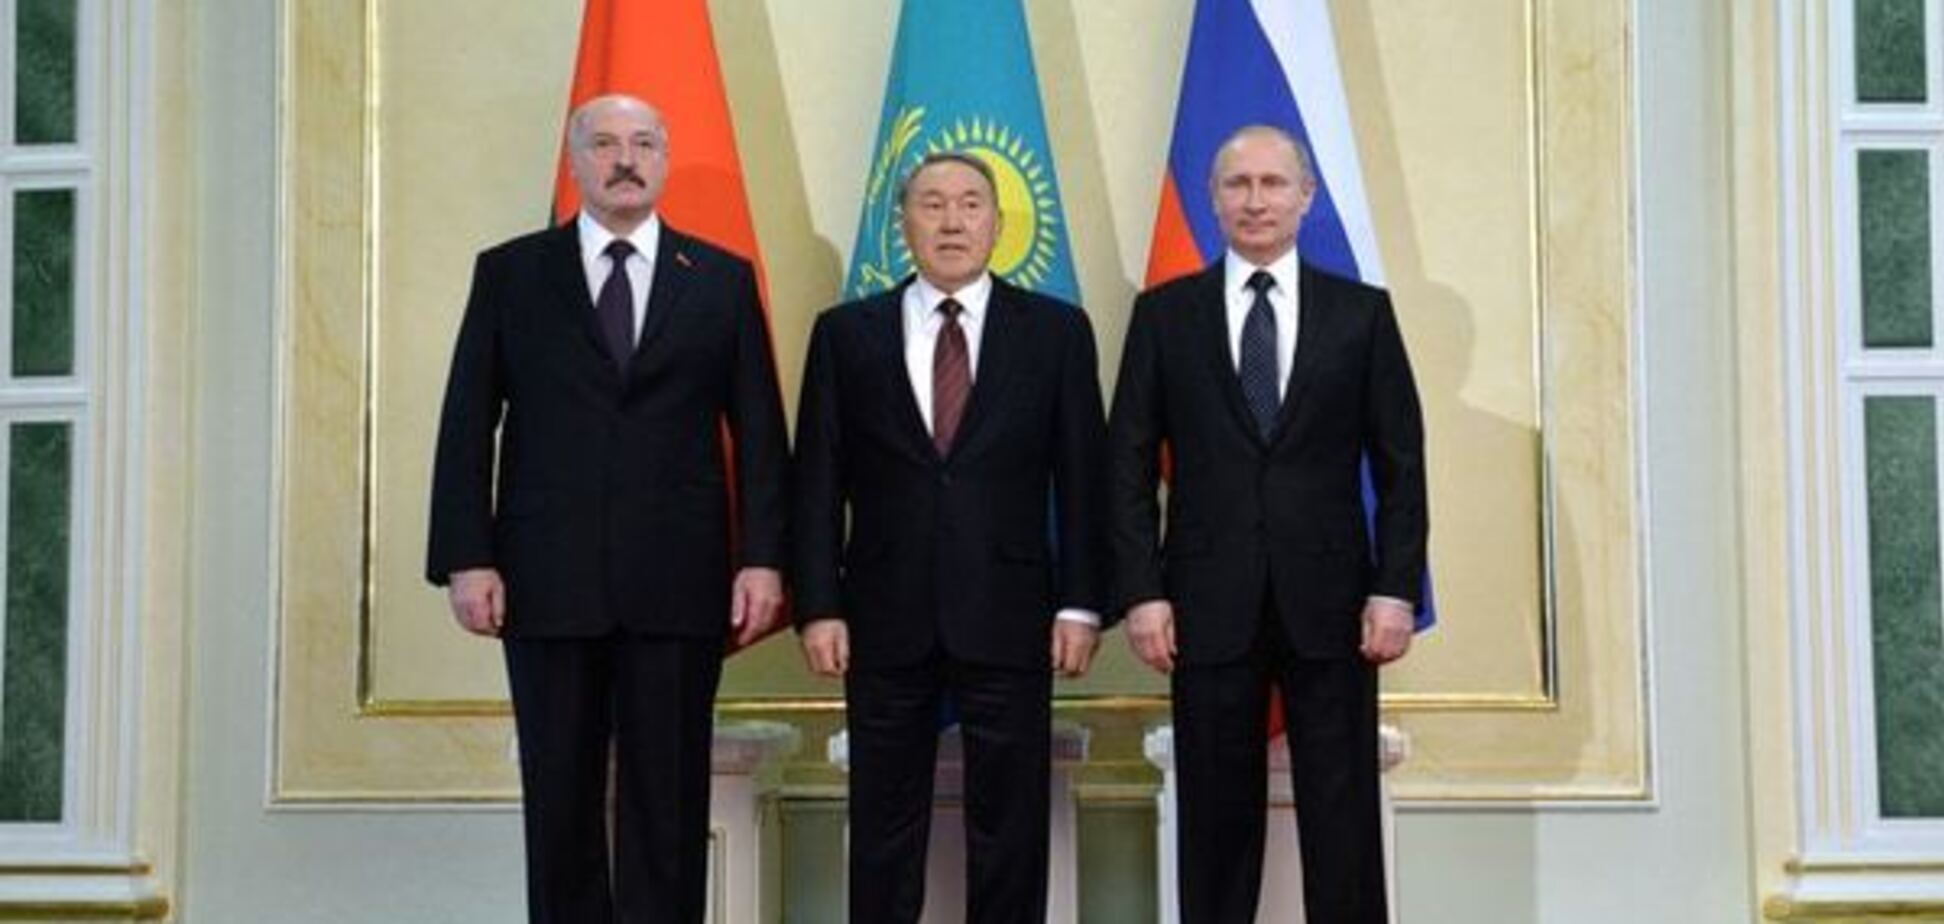 Путин может потянуть на дно Лукашенко и Назарбаева - Березовец